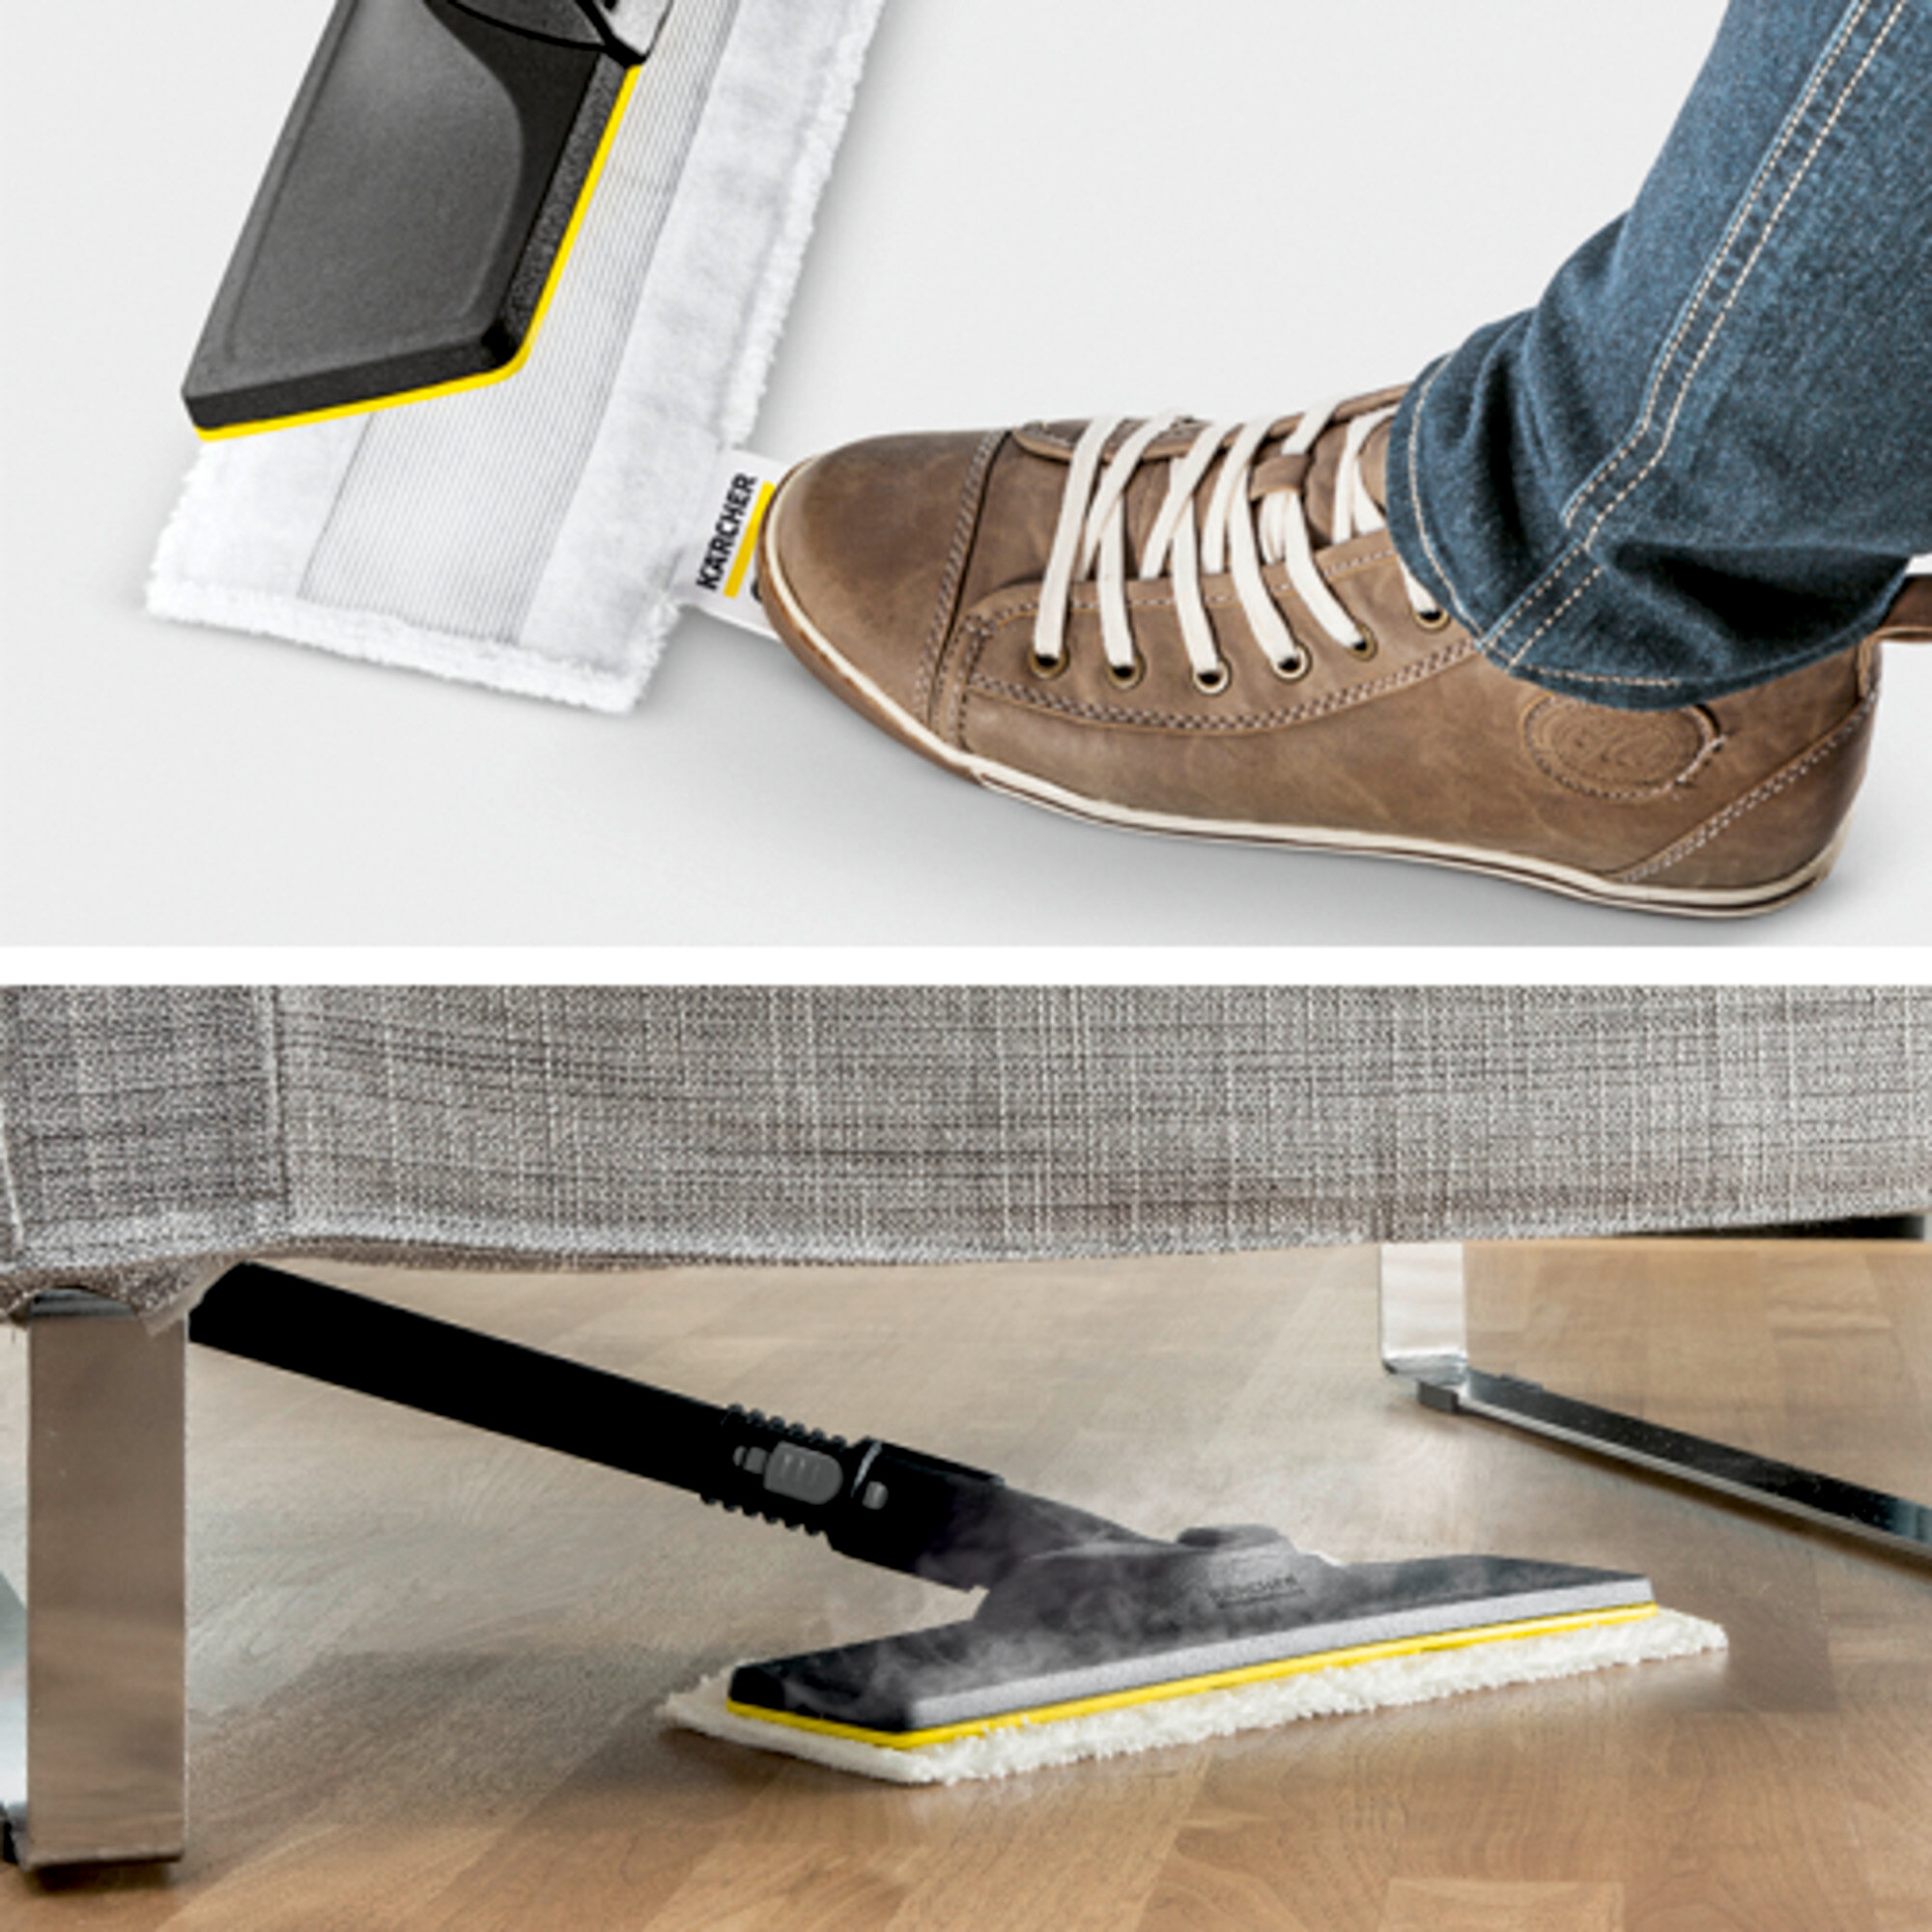 Garo valytuvai SC 4 EasyFix Premium: Grindų valymo rinkinys EasyFix su lanksčia jungtimi ant grindų antgalio ir lipnia fiksacijos sistema grindų šluostei.